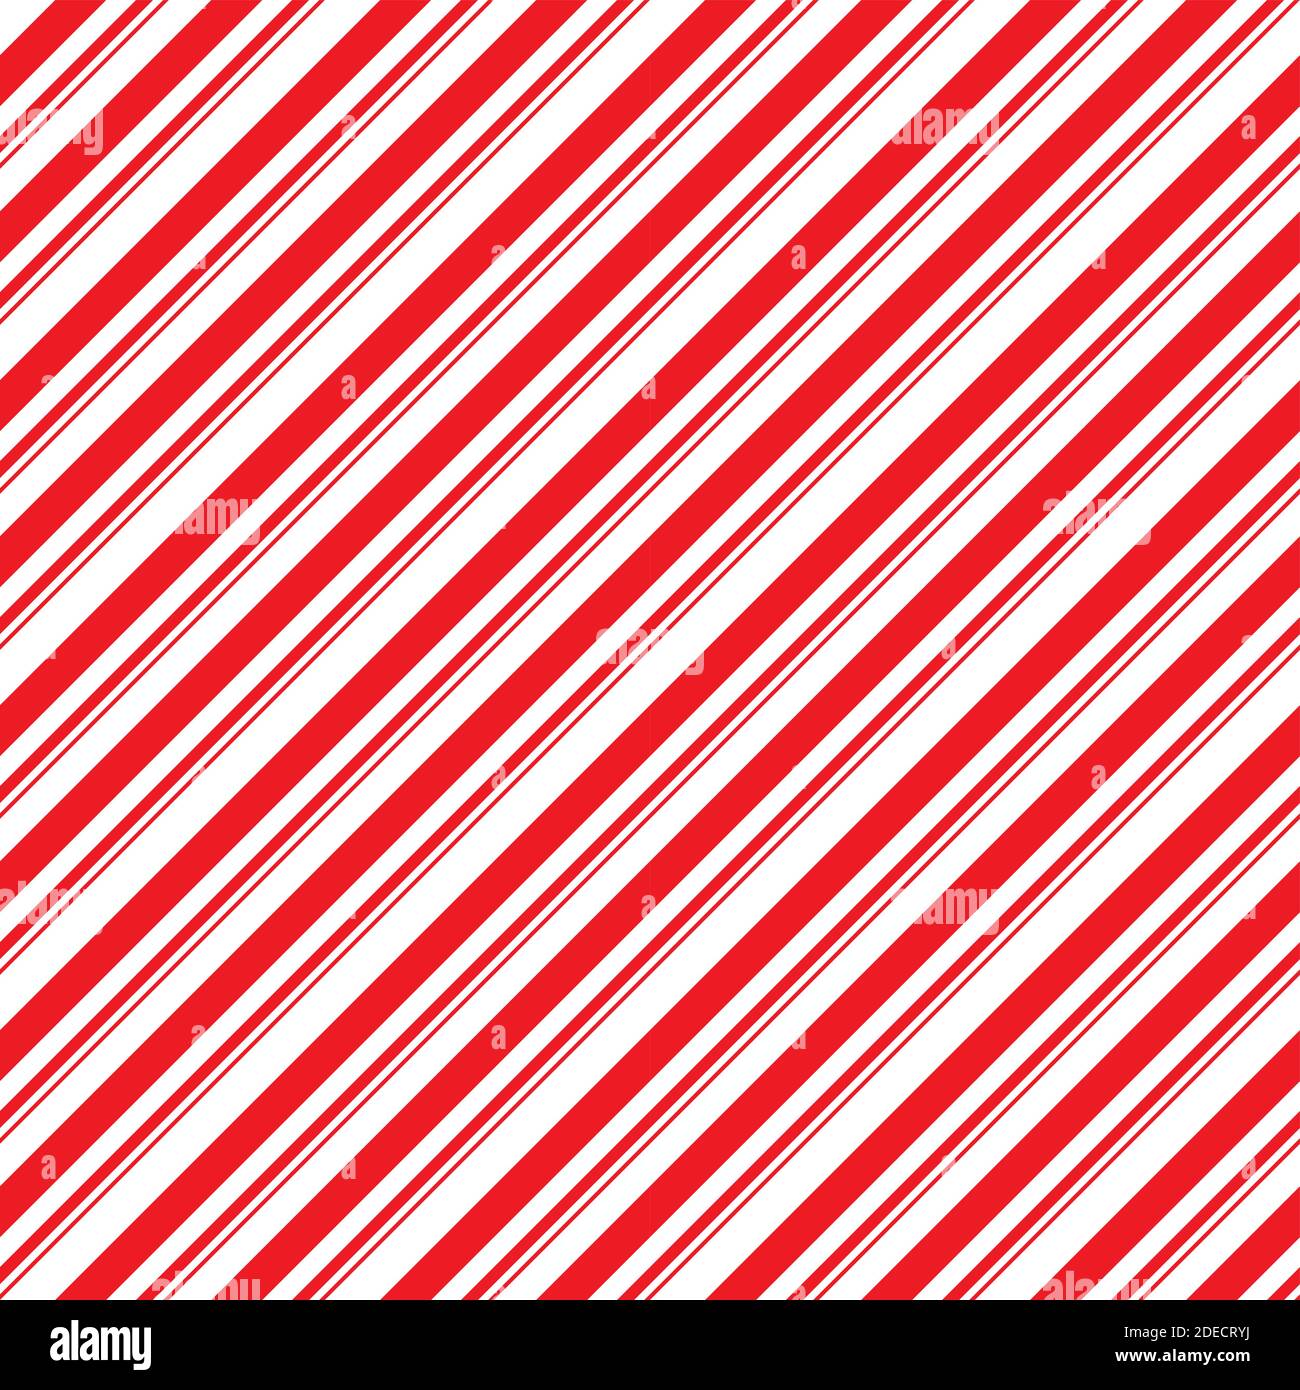 Rayas de caramelo caña sin costuras patrón. Líneas rectas diagonales fondo de Navidad. Papel para envolver de menta roja y blanca. Simple y moderno telón de fondo mal Ilustración del Vector